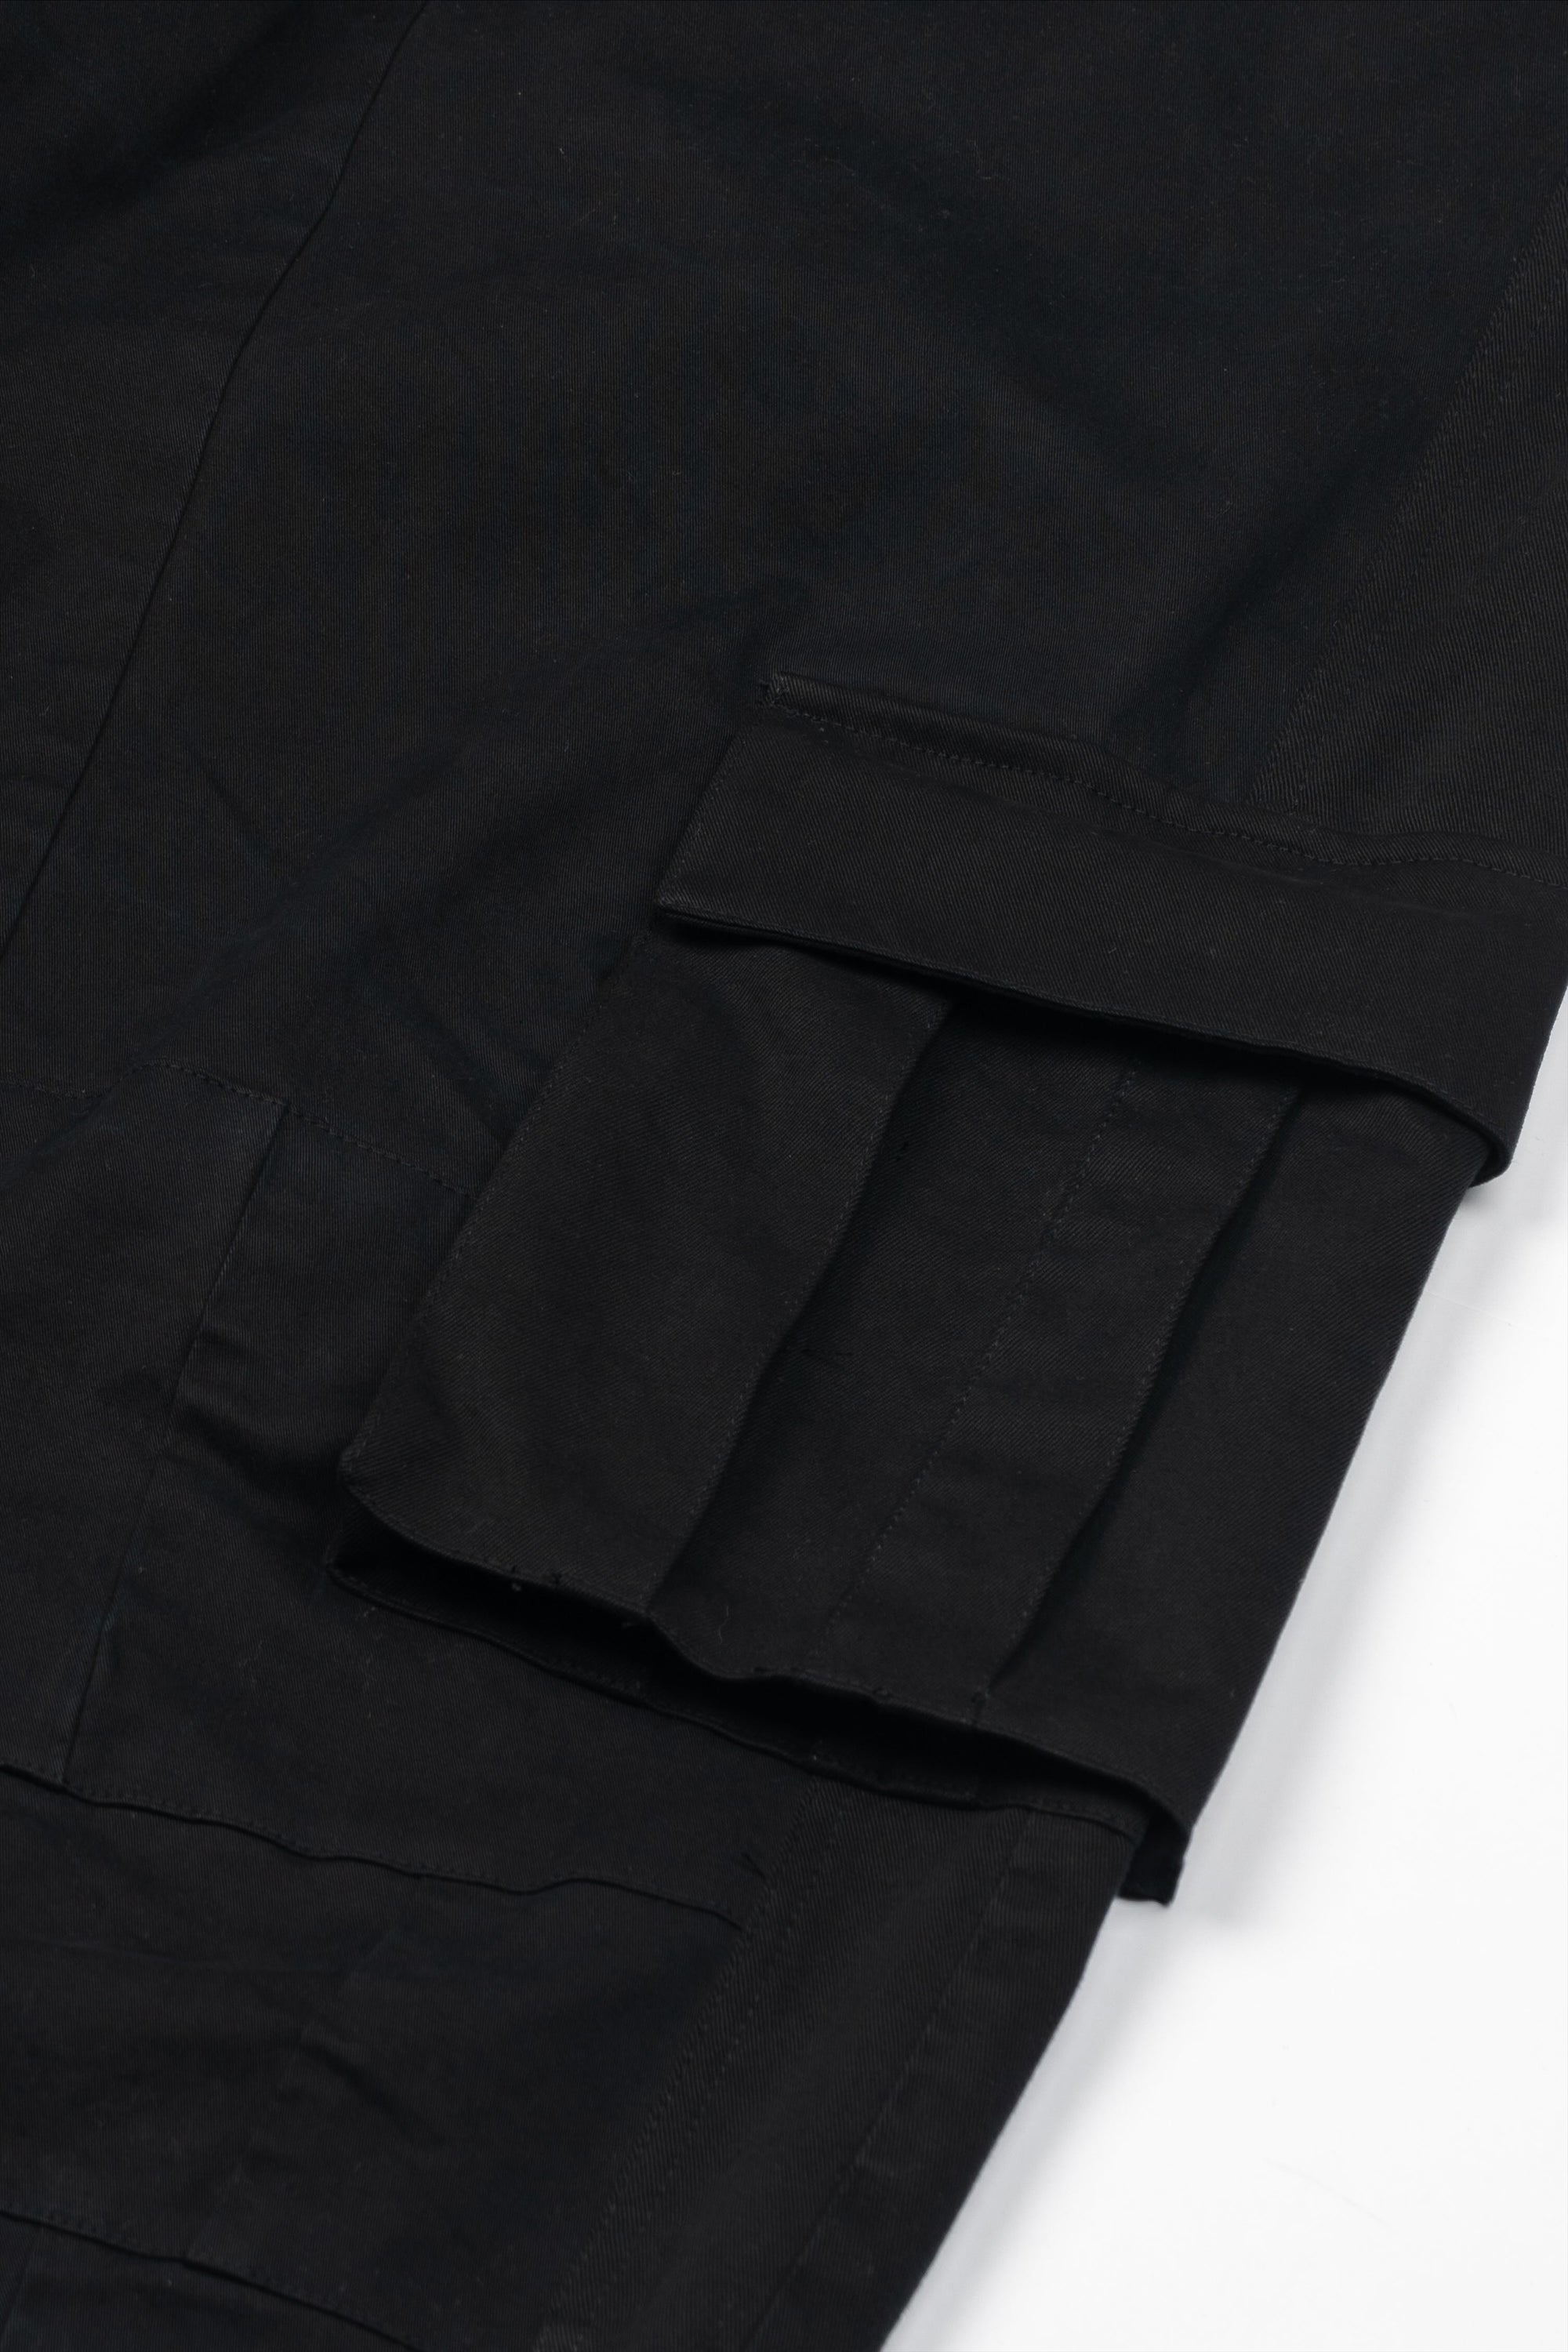 Recraft Walk Wear 002 - Oversized Pocket Pants Black